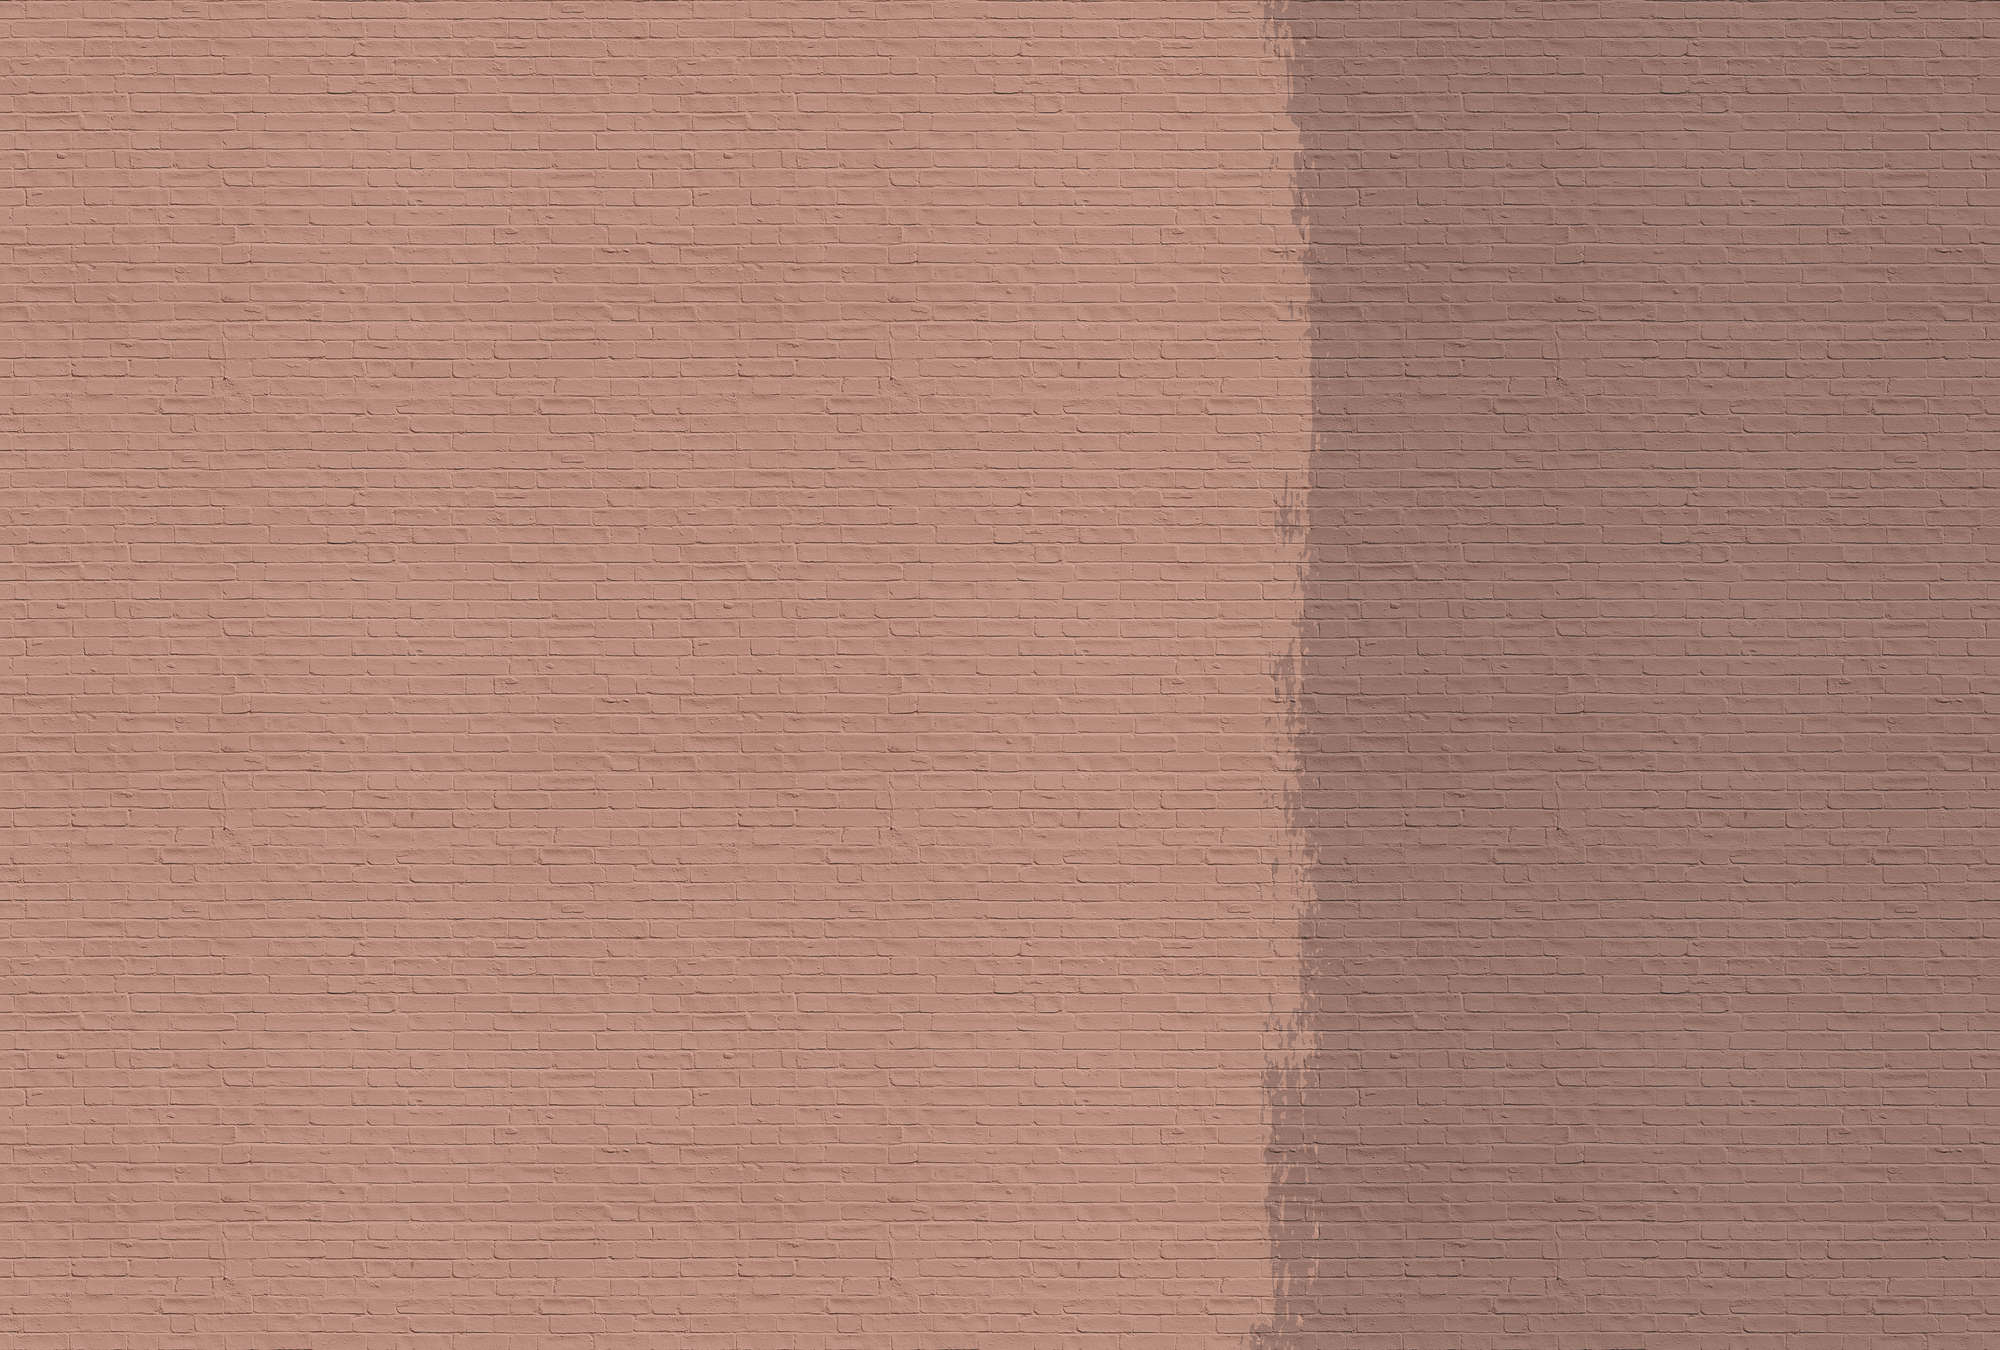             Tainted love 3 - Papier peint mur de briques rouge-brun - cuivre, orange | Premium intissé lisse
        